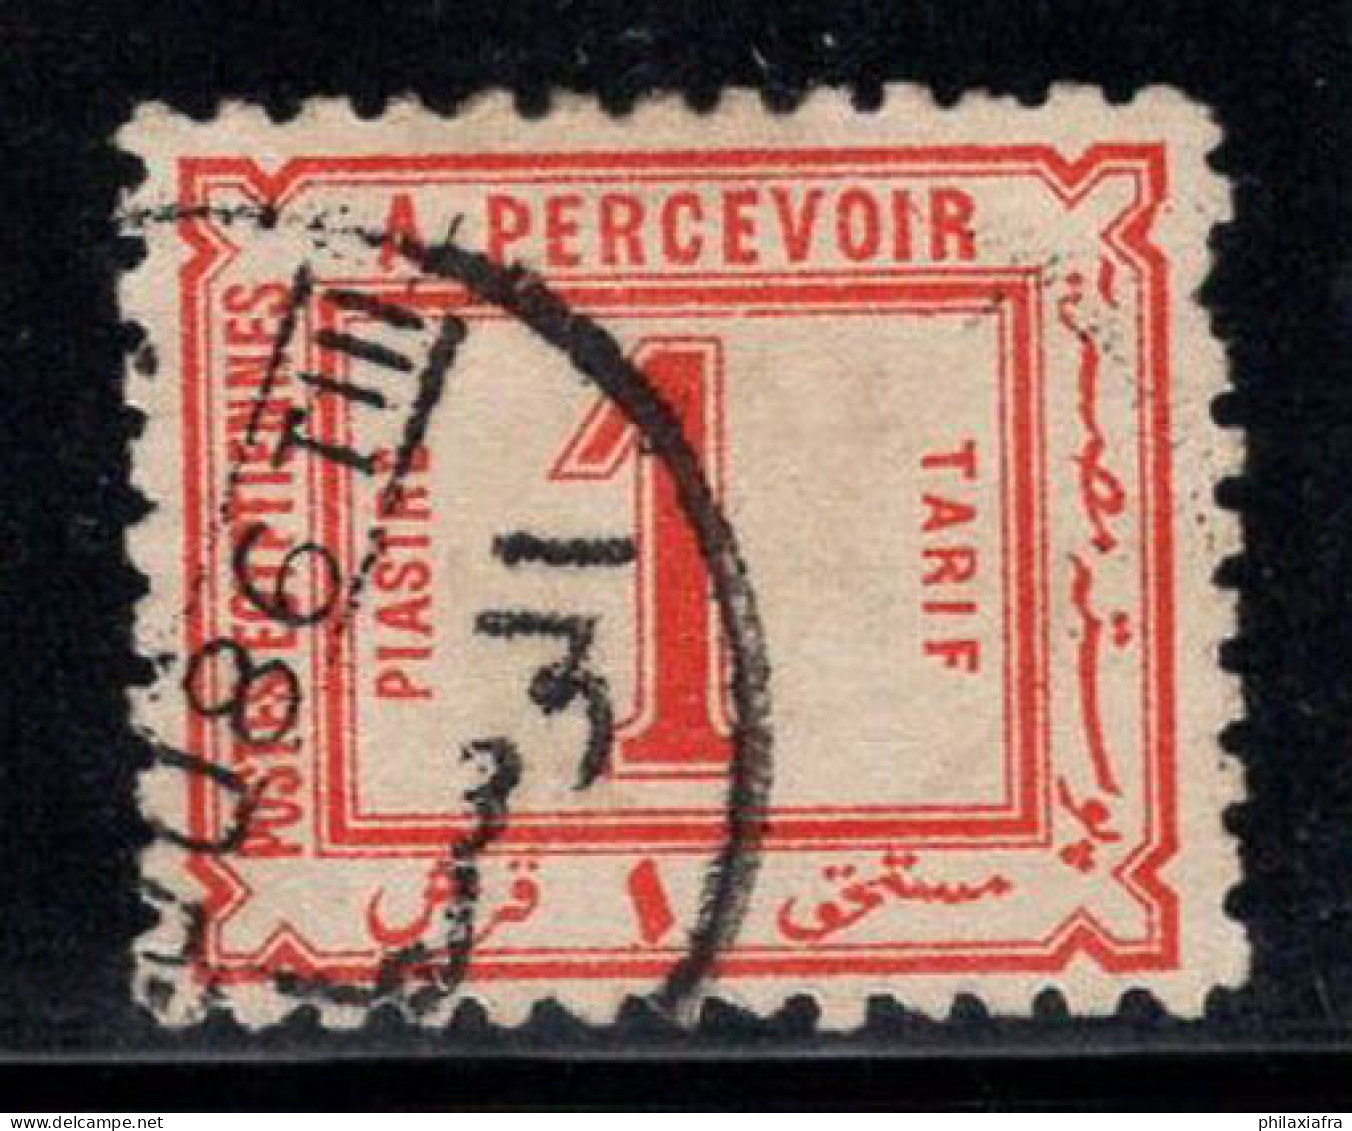 Égypte 1884 Mi. 3 Oblitéré 40% 1 P Timbre-taxe - 1866-1914 Ägypten Khediva